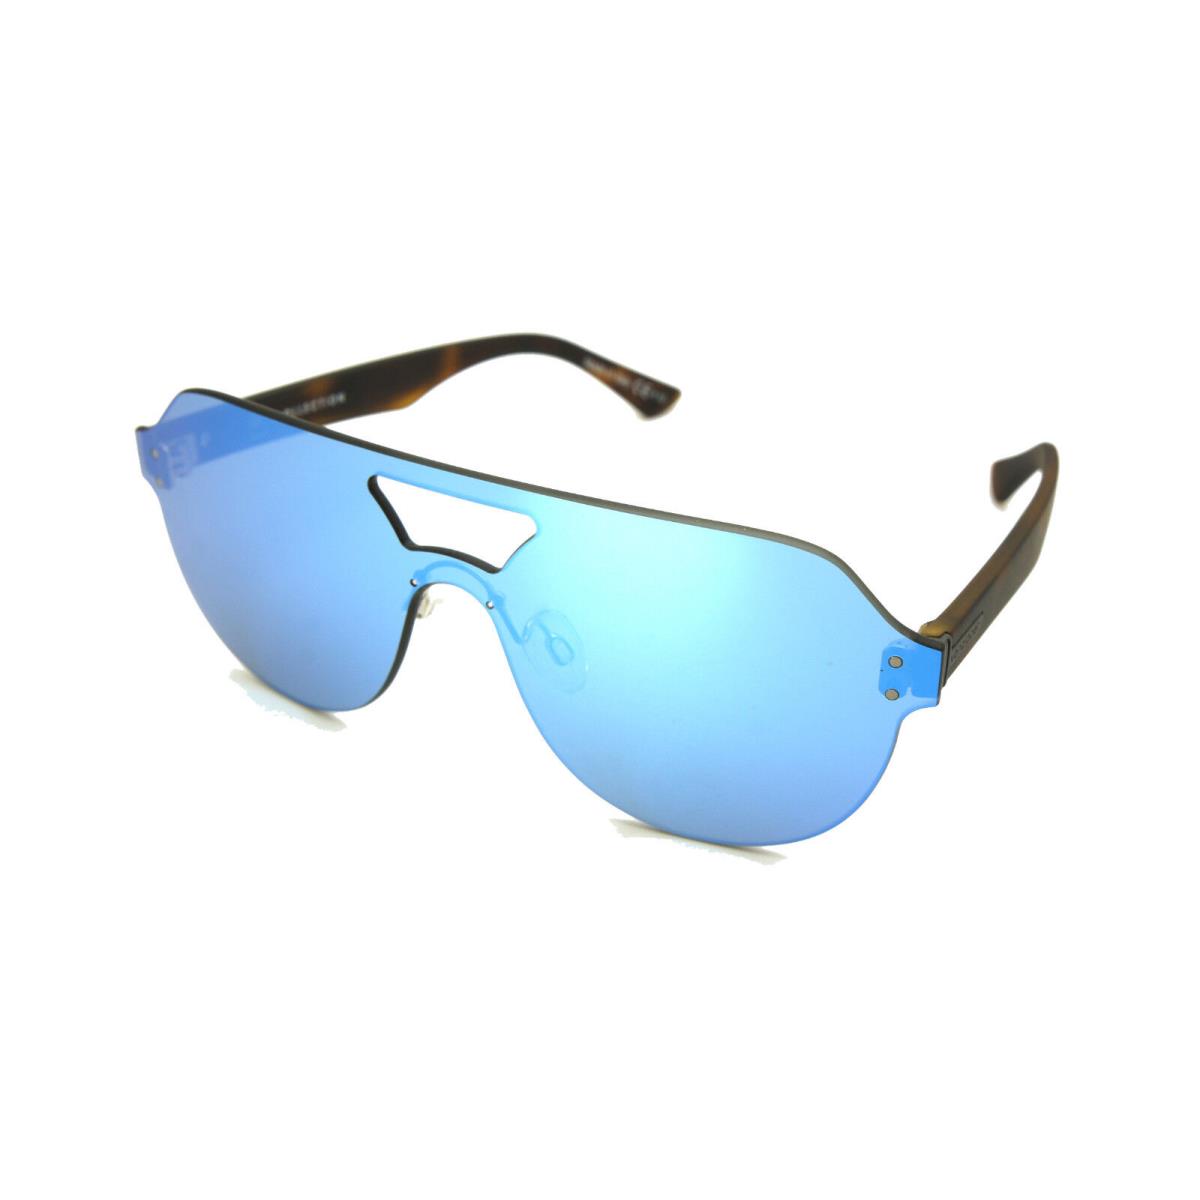 Vonzipper Alt Psychwig Sunglasses Tortoise Satin / Sky Chrome Smffgaps-atk